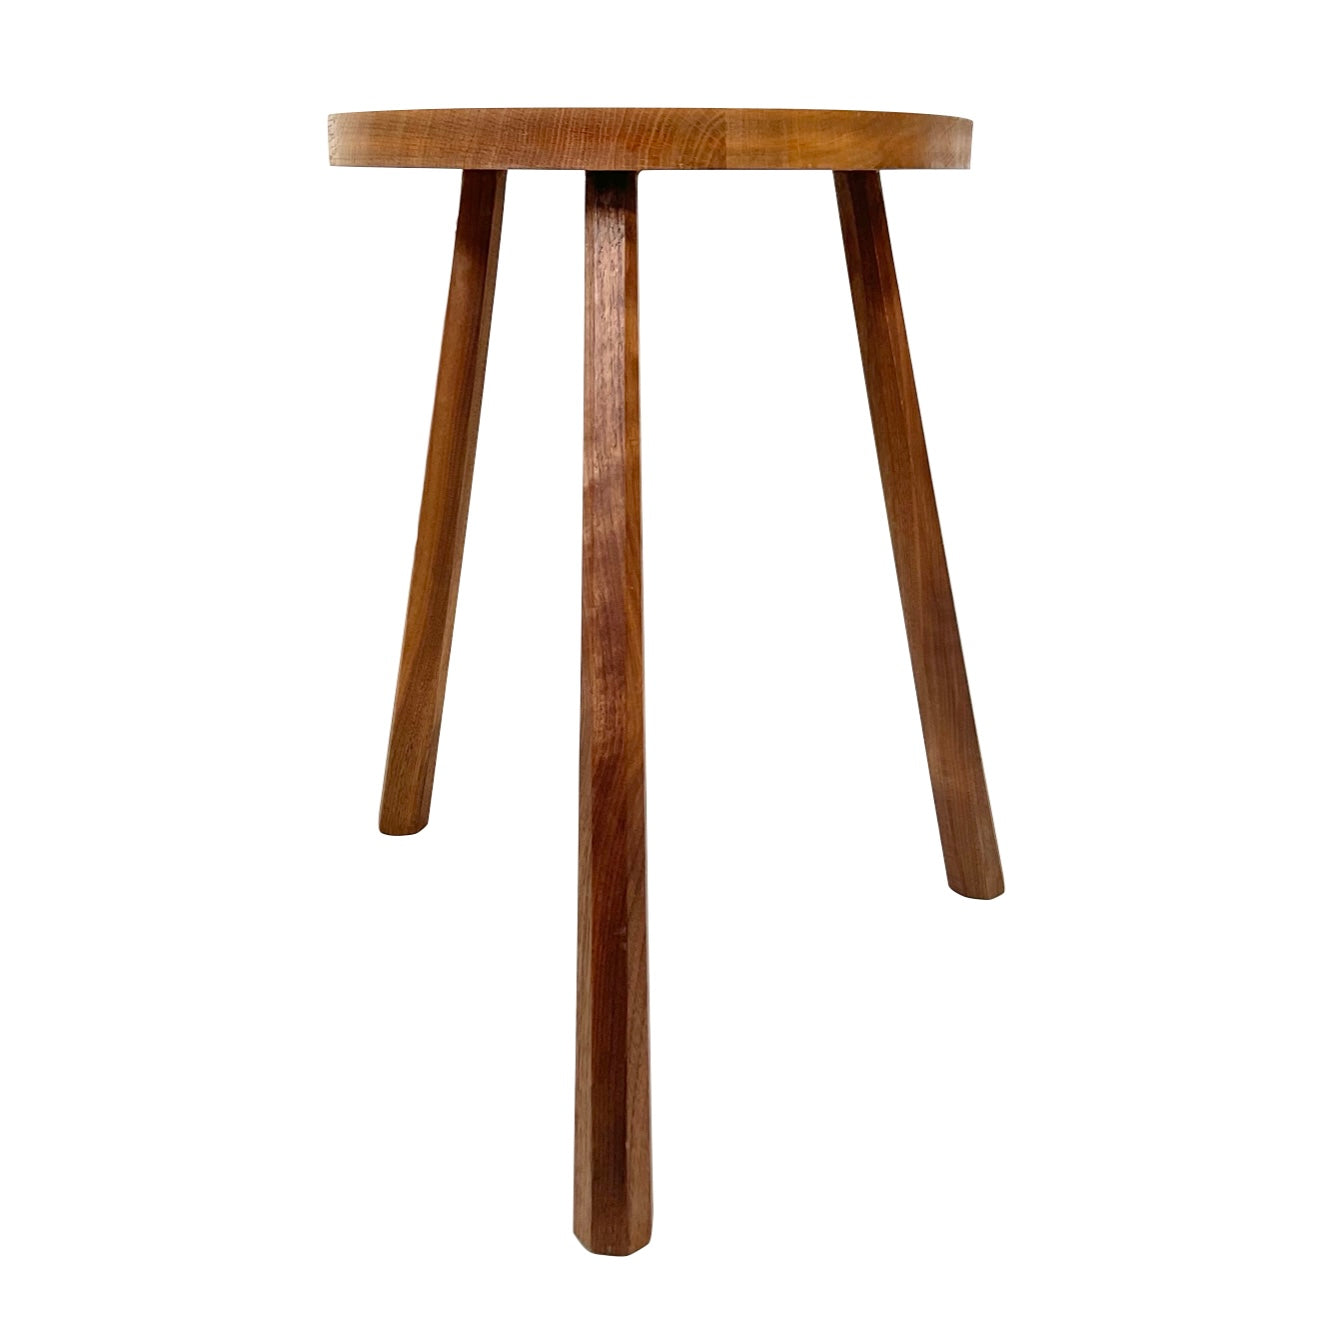 English oak stool / side table